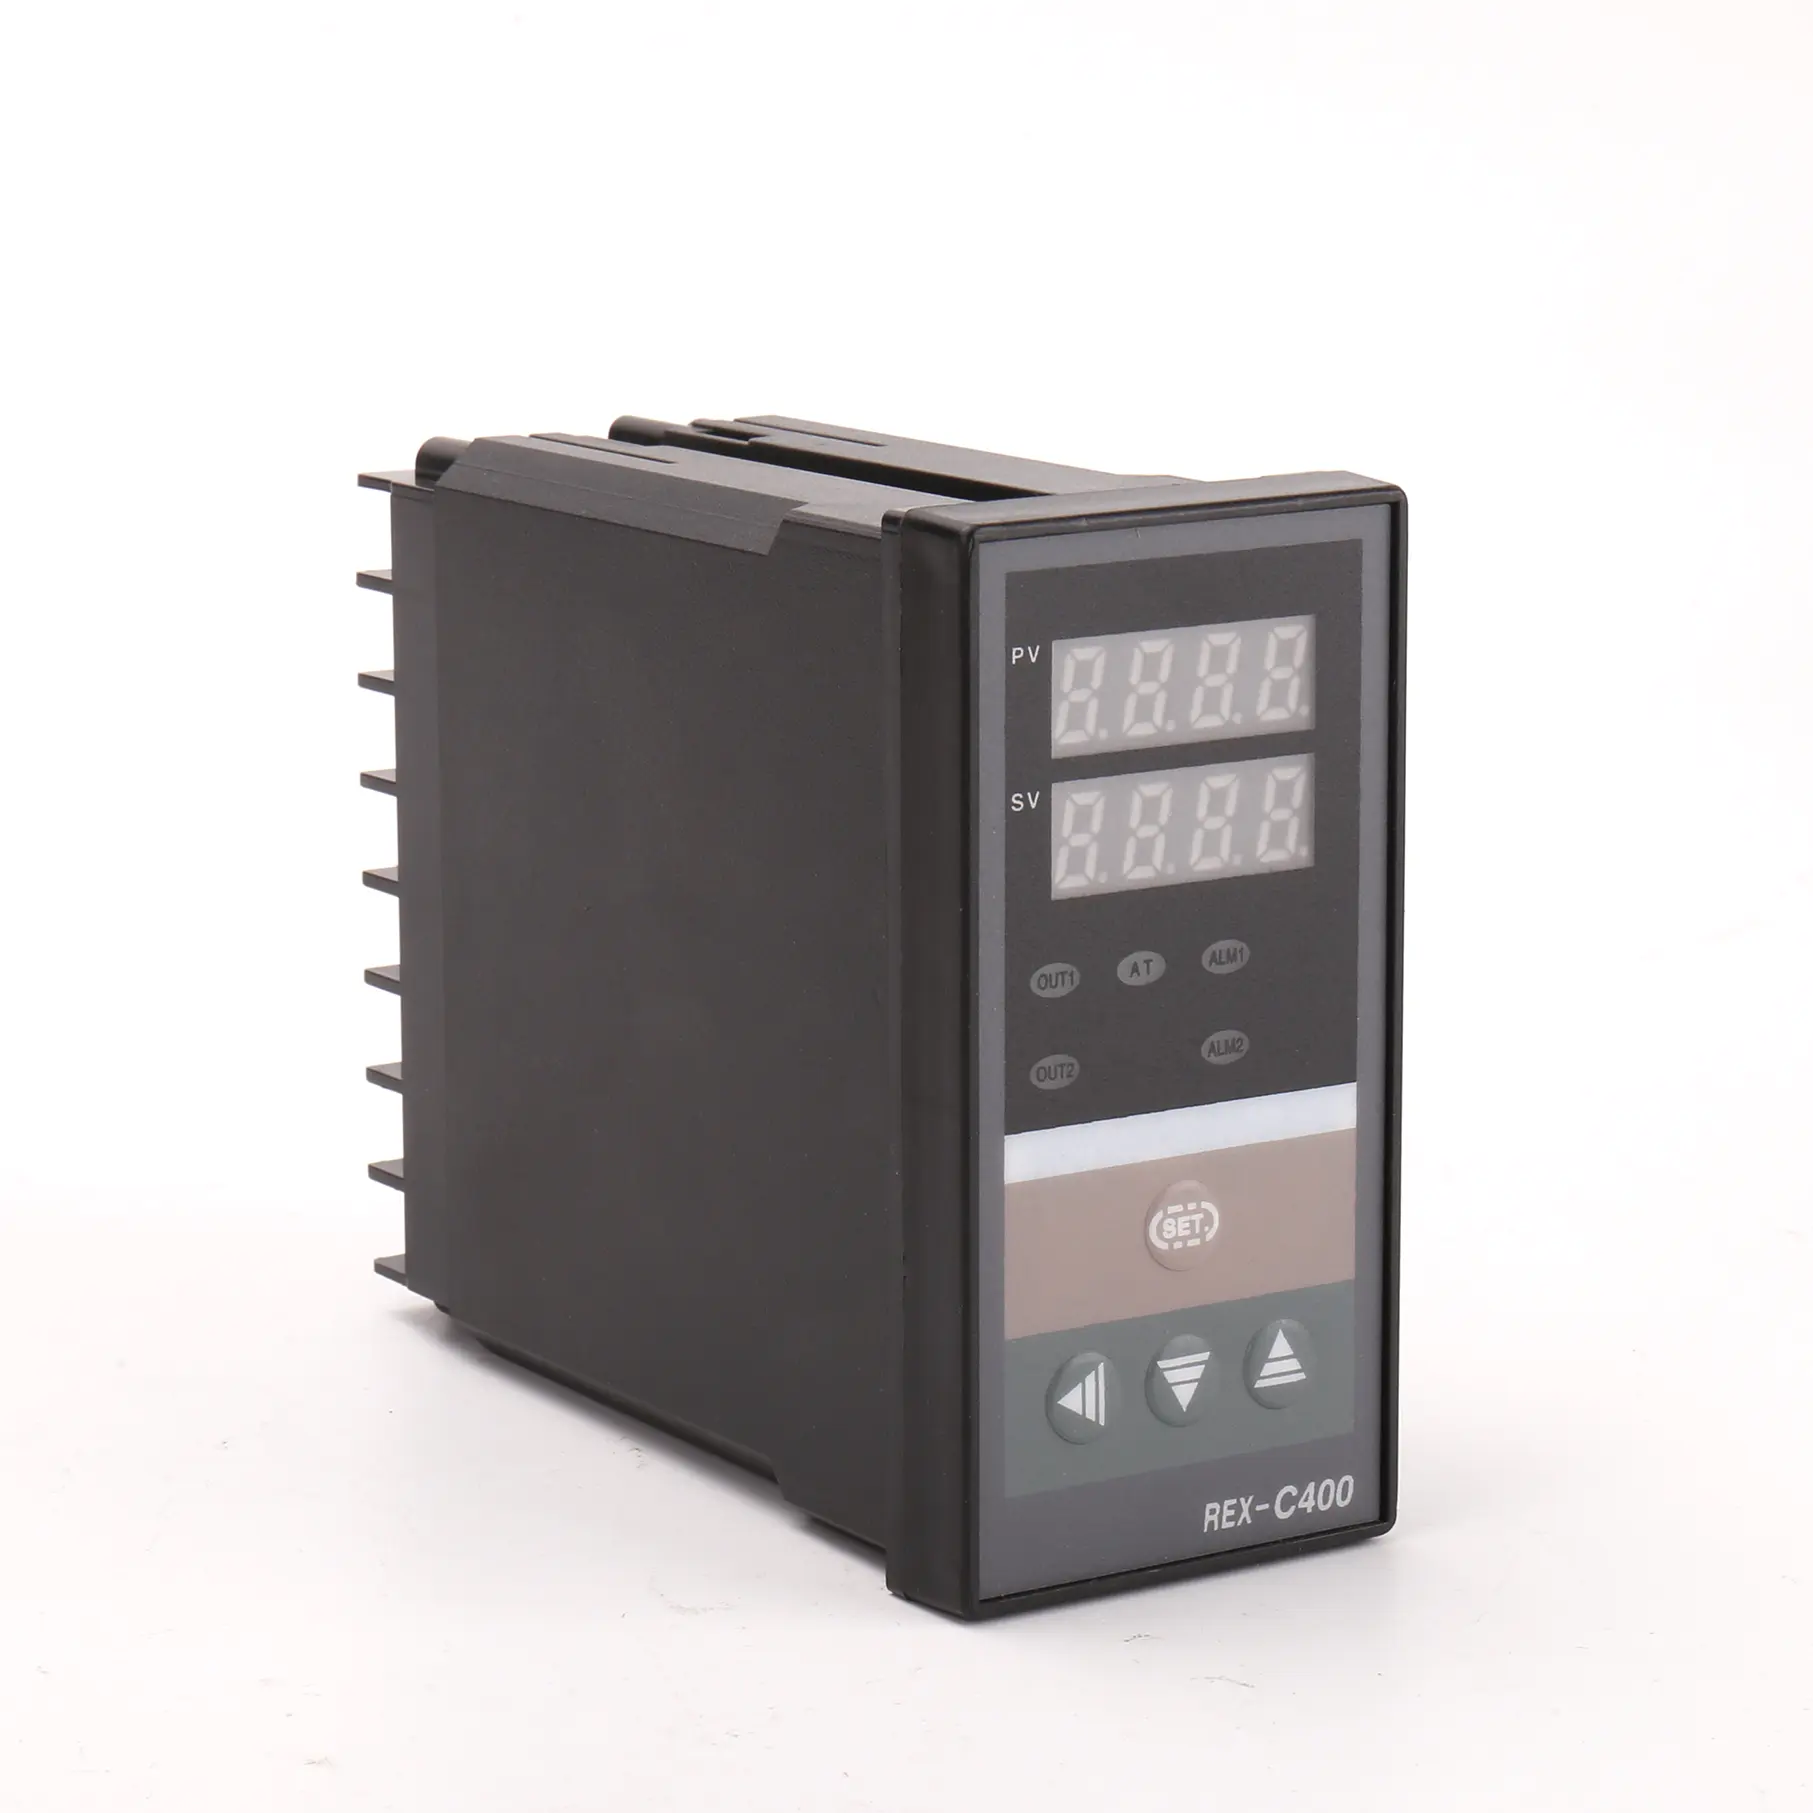 Controlador de temperatura PID Honeywel typel, termostato Modbus, controlador de temperatura inteligente